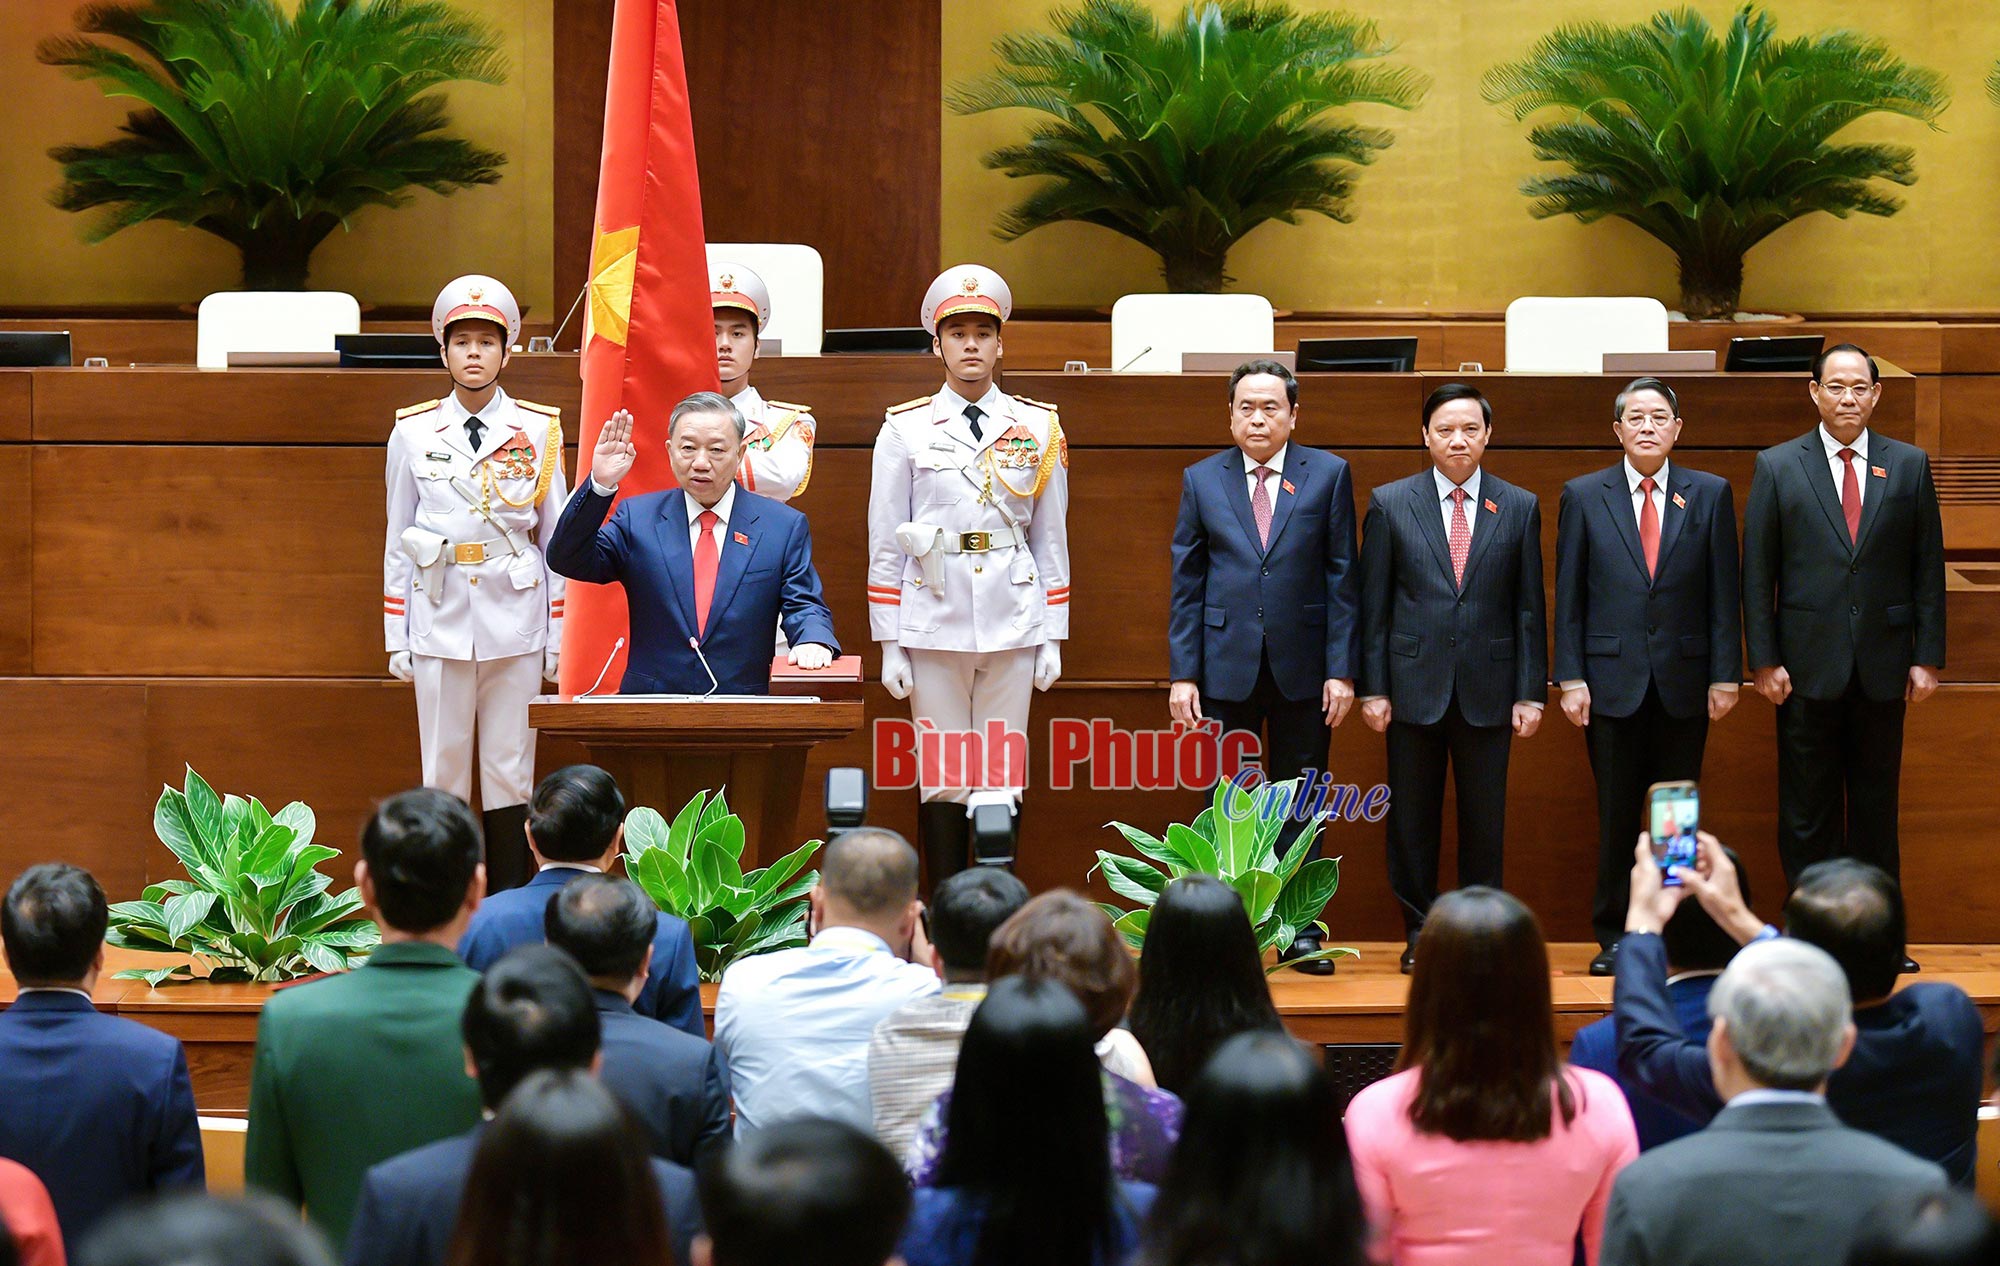 Đại tướng Tô Lâm được bầu giữ chức Chủ tịch nước